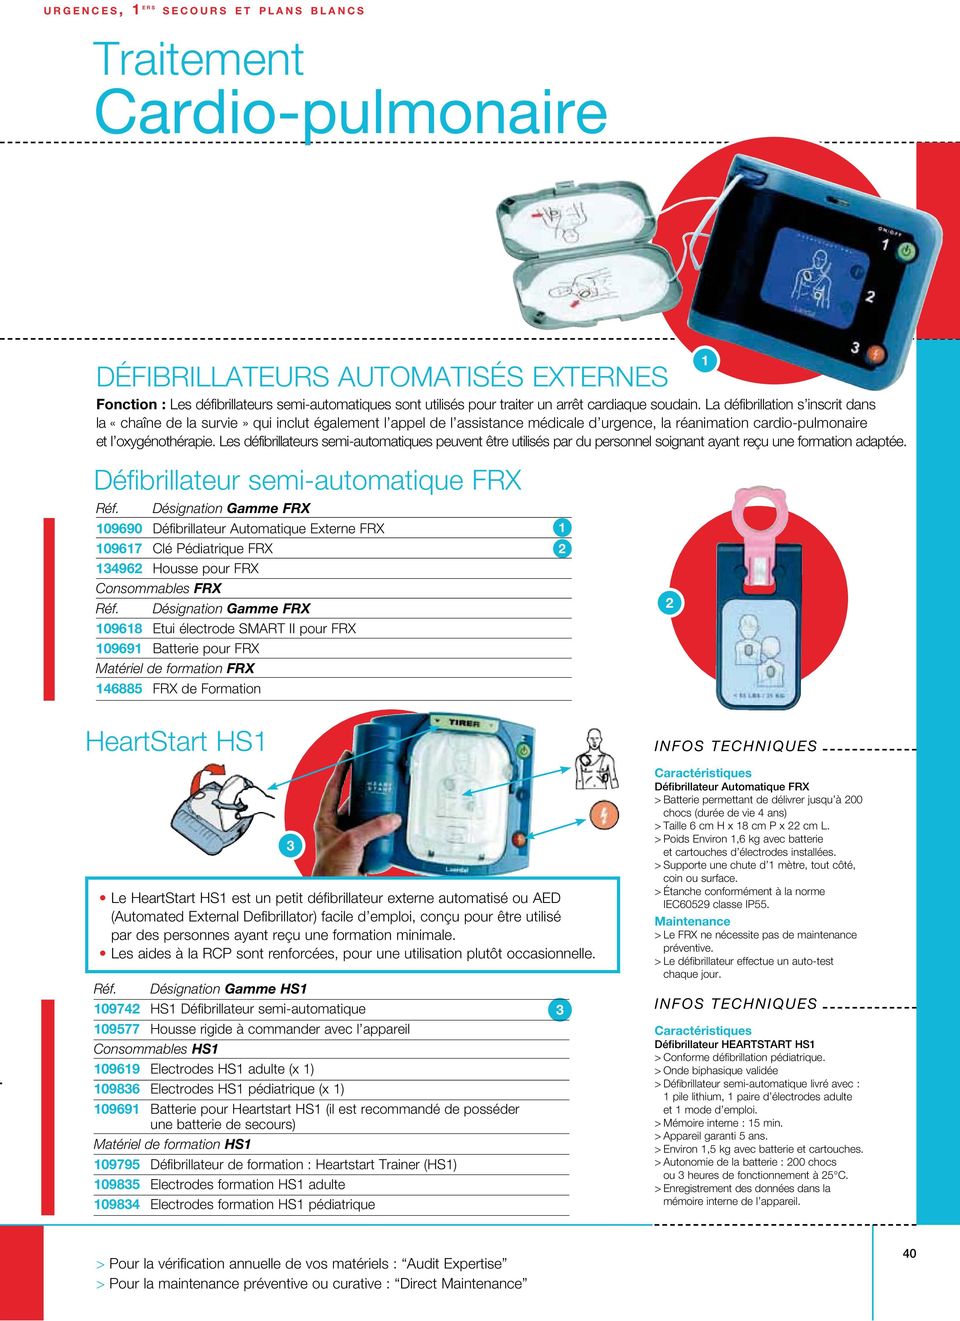 Les défibrillateurs semi-automatiques peuvent être utilisés par du personnel soignant ayant reçu une formation adaptée.